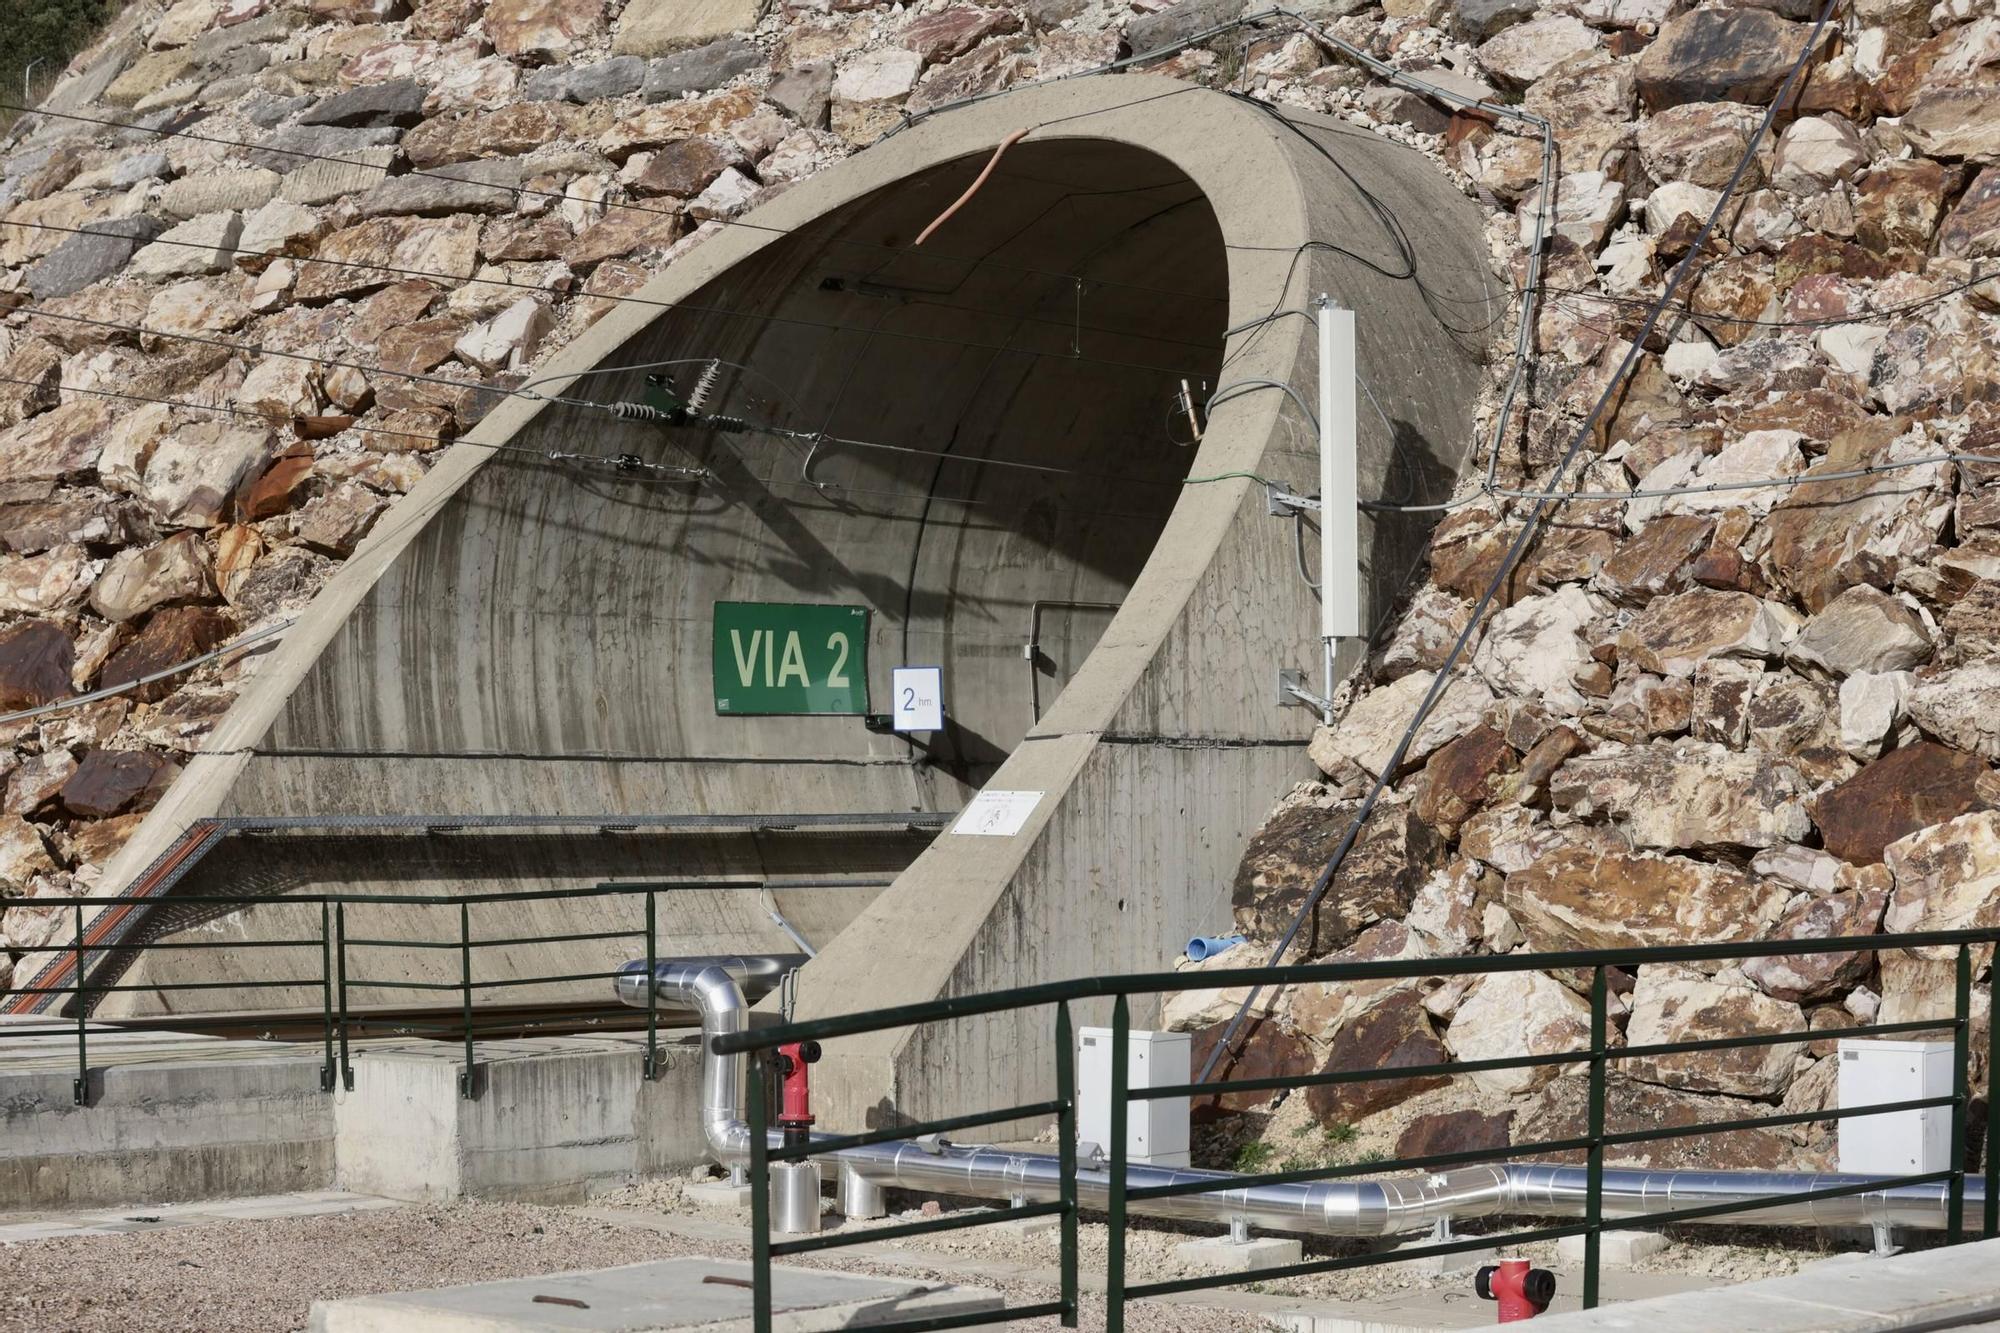 En imágenes: Así fue el primer simulacro de siniestro en los túneles de la Variante de Pajares